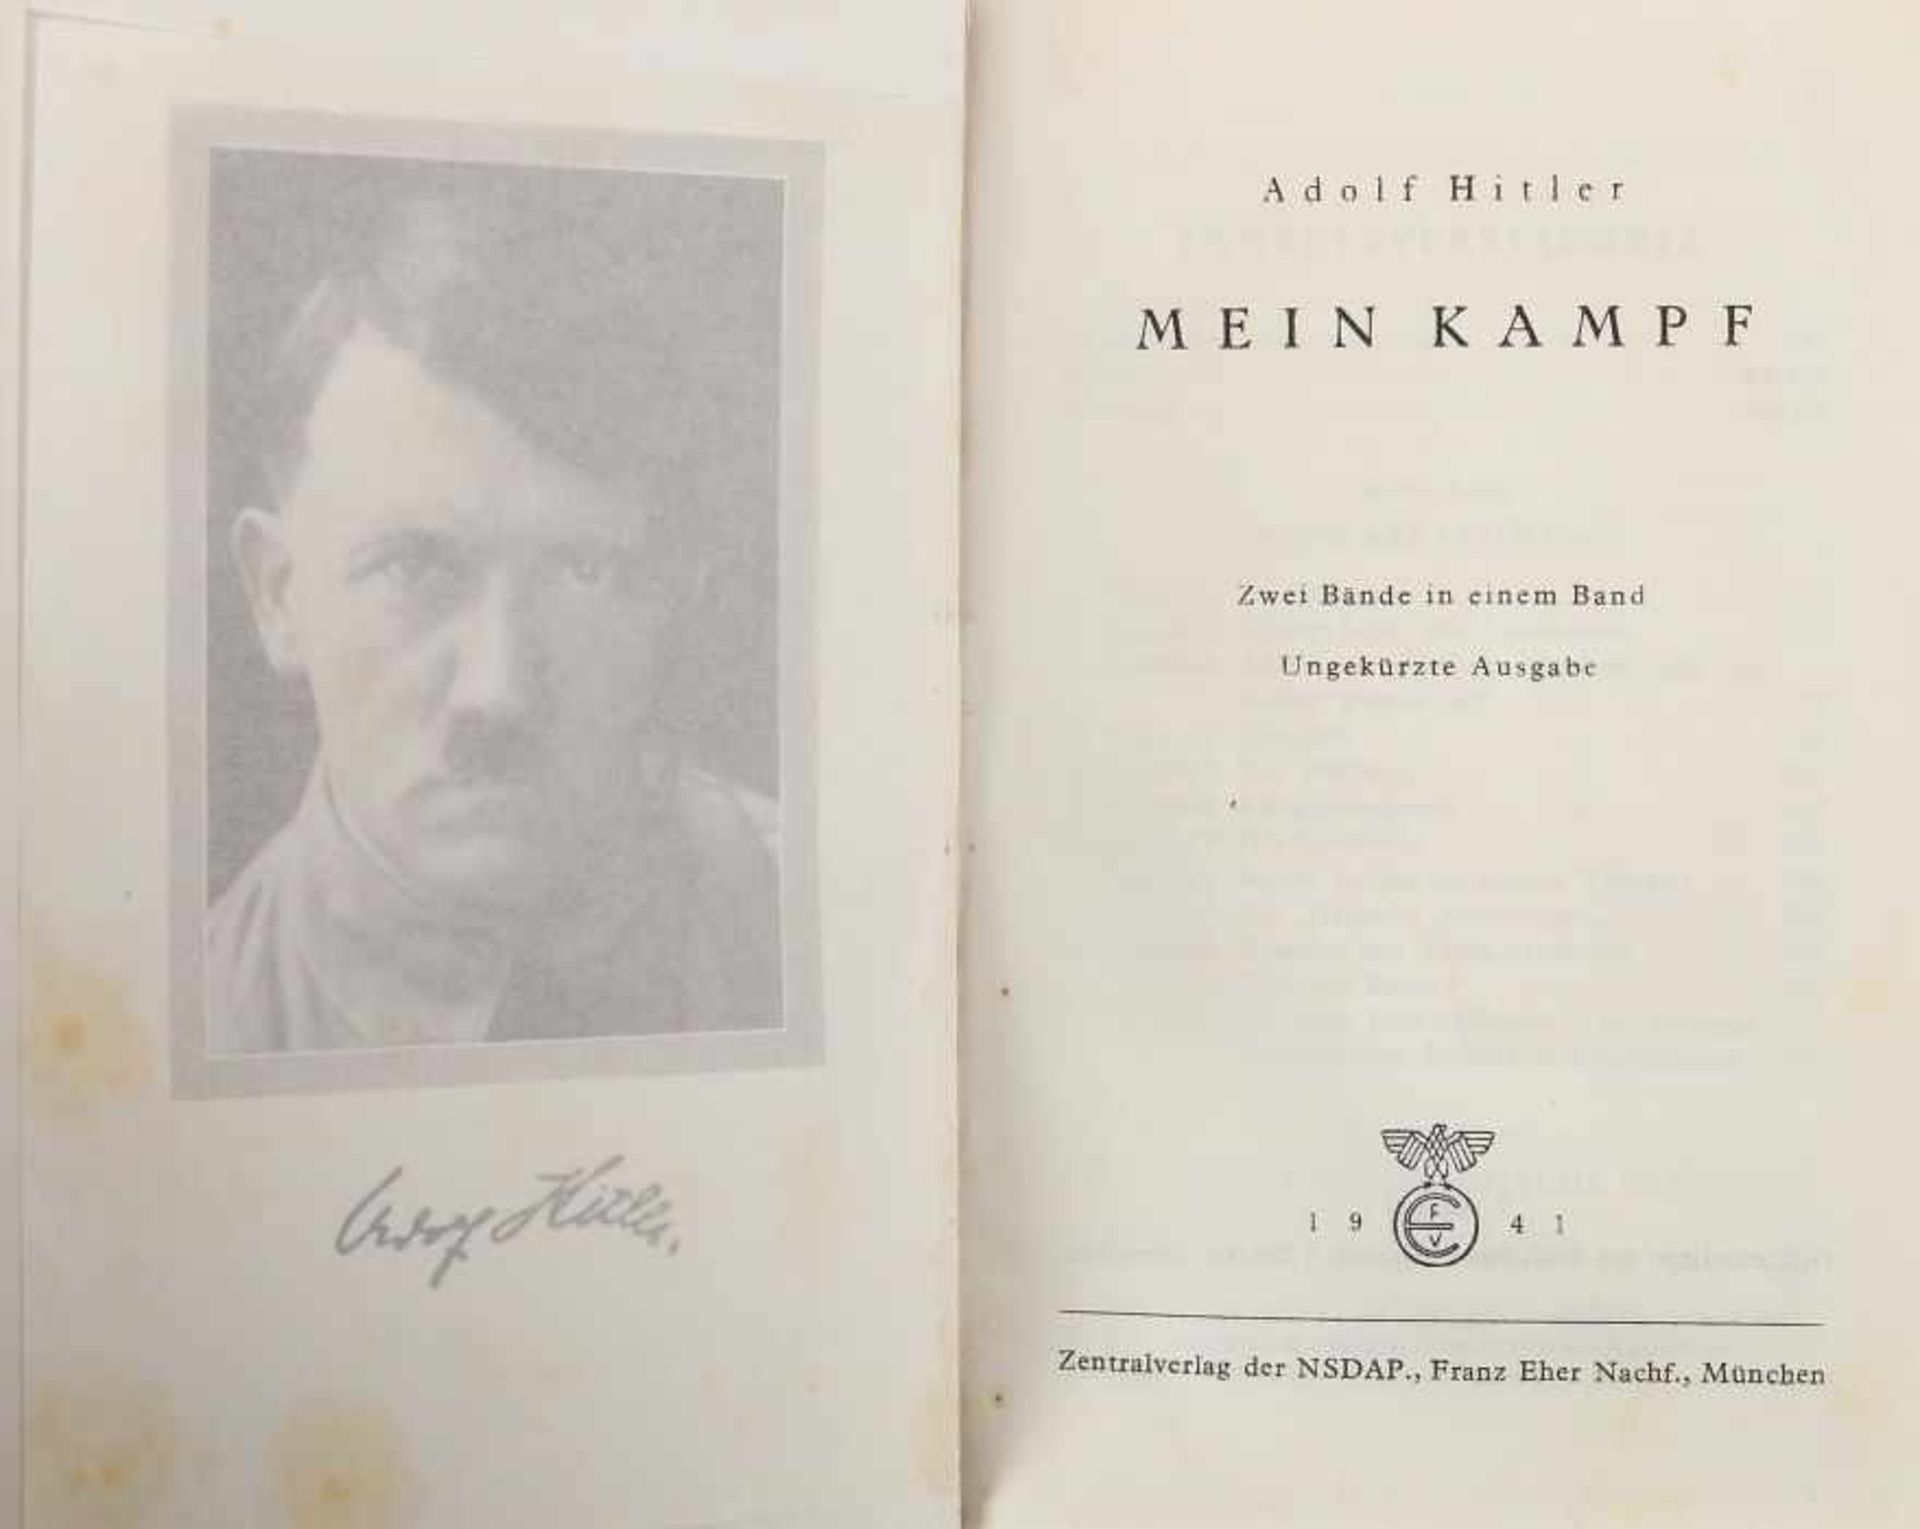 Hitler, Adolf Mein Kampf, München, Zentralverlag der NSDAP Eher, 1941, 7. Auflage, Fronitspiz, - Image 2 of 2